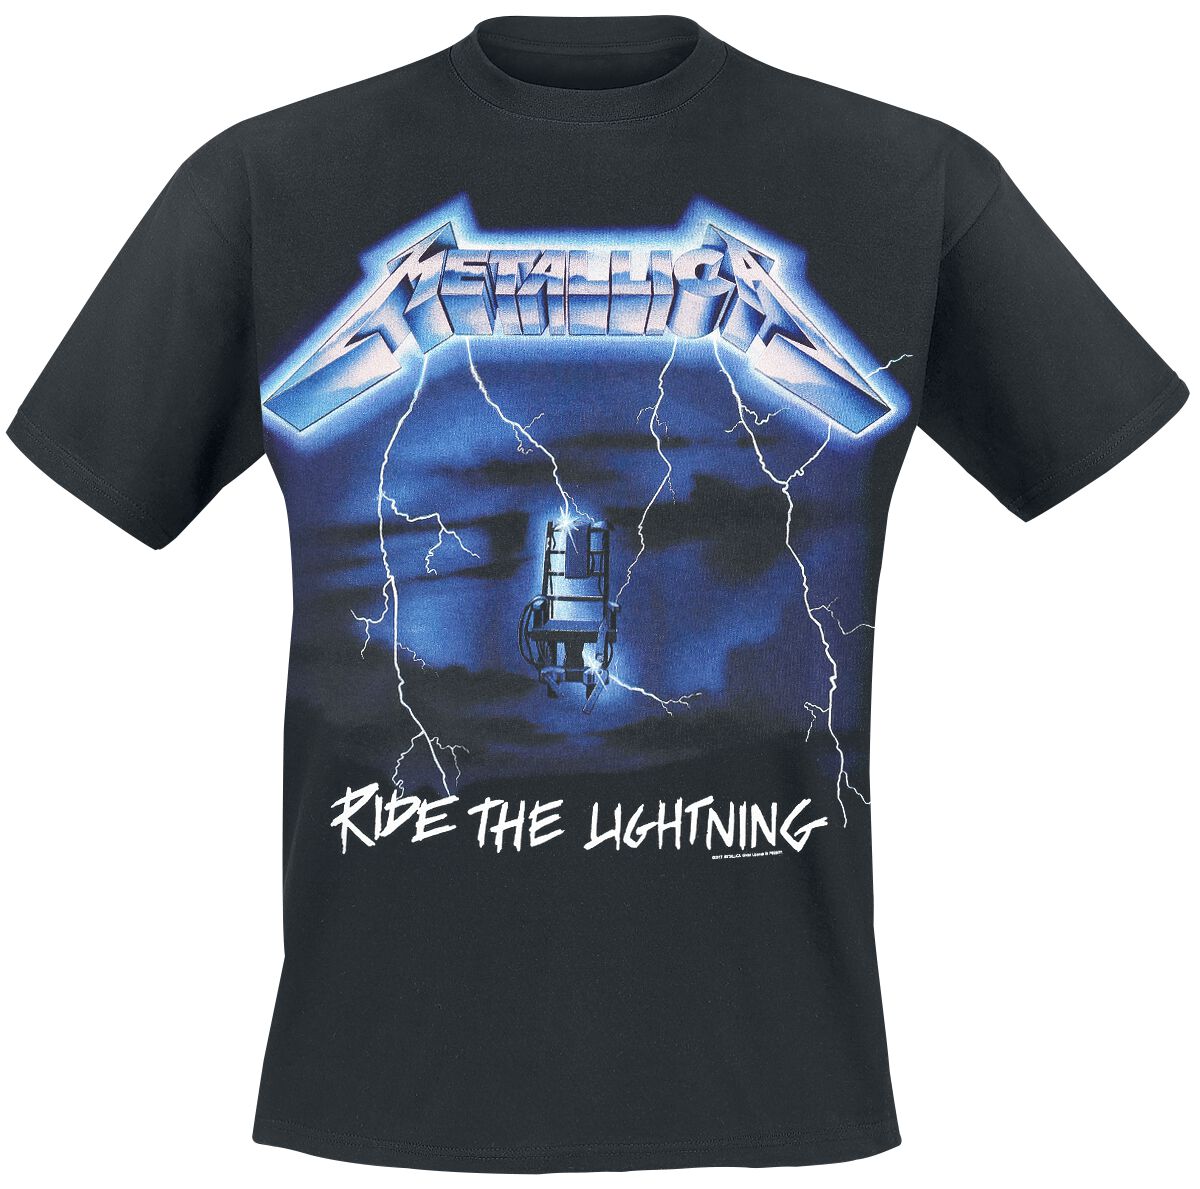 Metallica T-Shirt - Ride The Lightning - S bis 5XL - für Männer - Größe 4XL - schwarz  - Lizenziertes Merchandise!